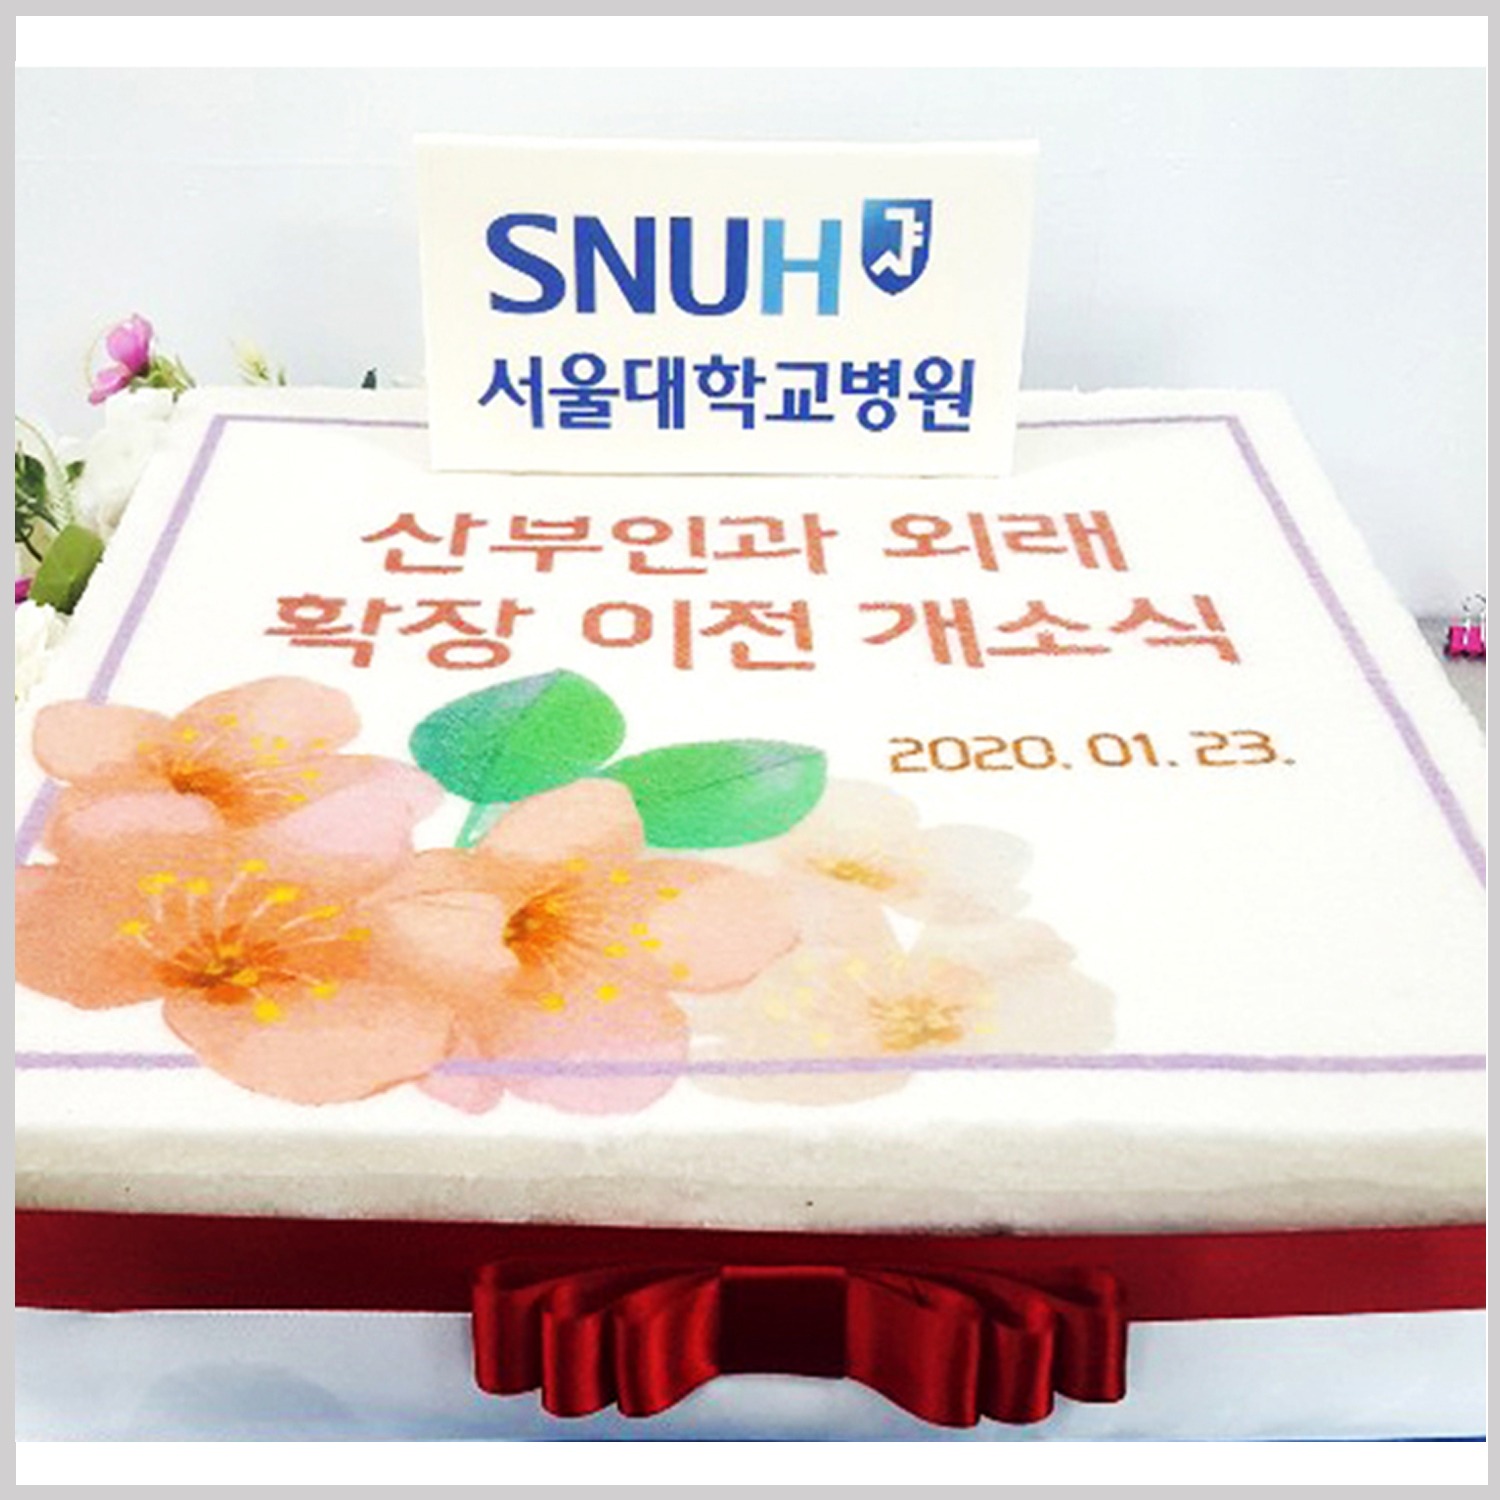 서울대학교 병원 산부인과 외래 확장이전 기념 케이크